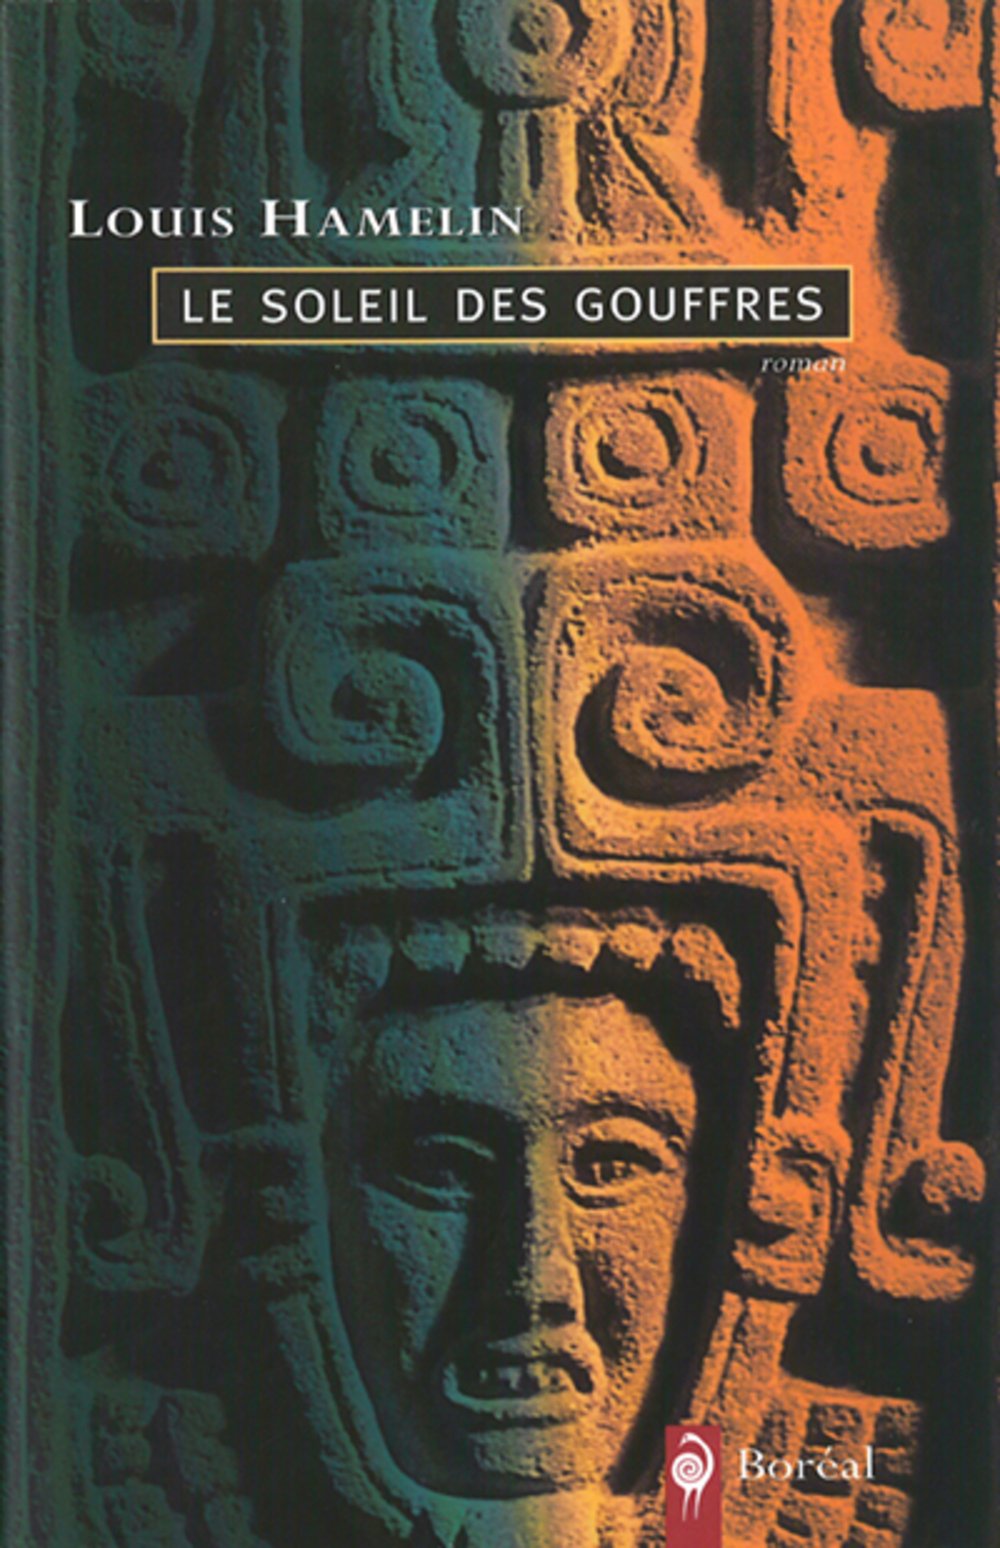 Livre ISBN 2890527921 Le soleil des gouffres (Louis Hamelin)